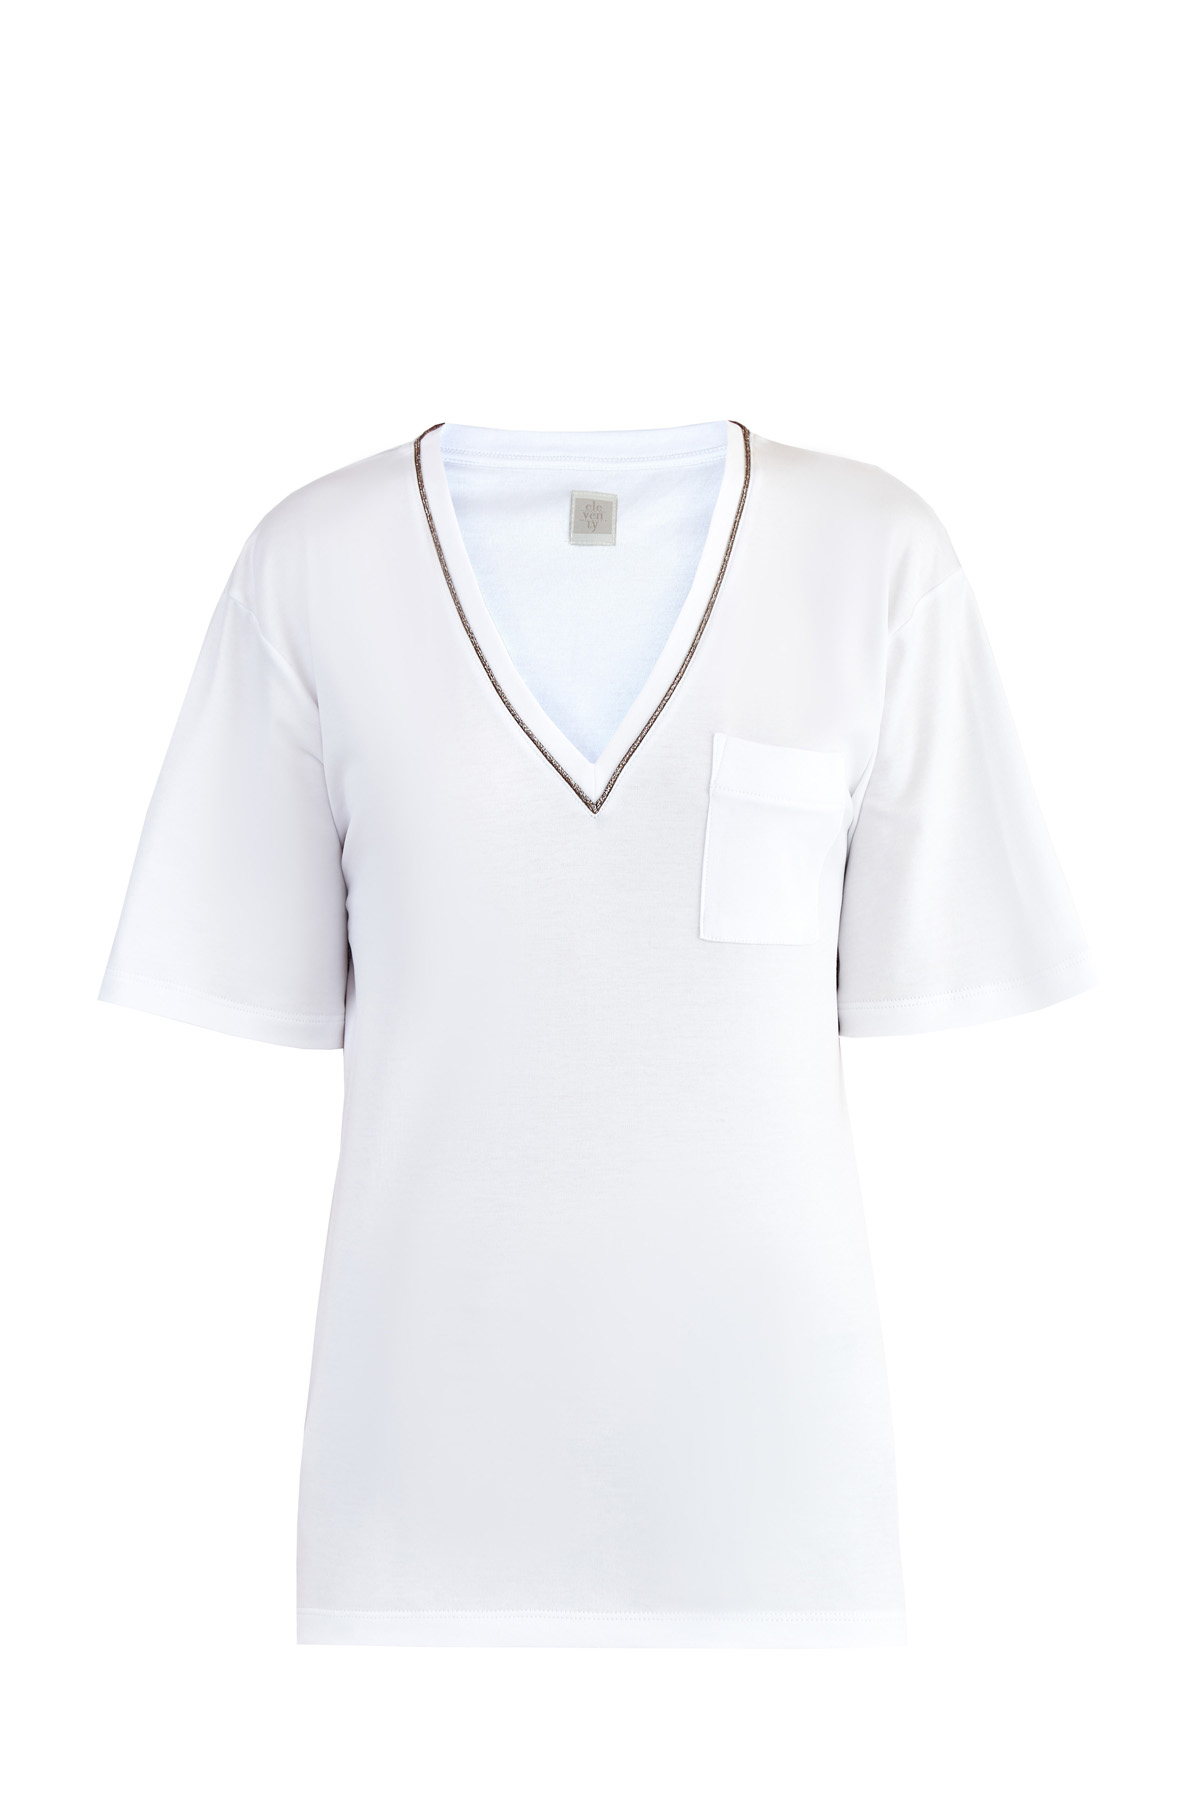 Свободная футболка с отделкой мерцающей тесьмой и карманом ELEVENTY, цвет белый, размер 44;46;48;42 - фото 1